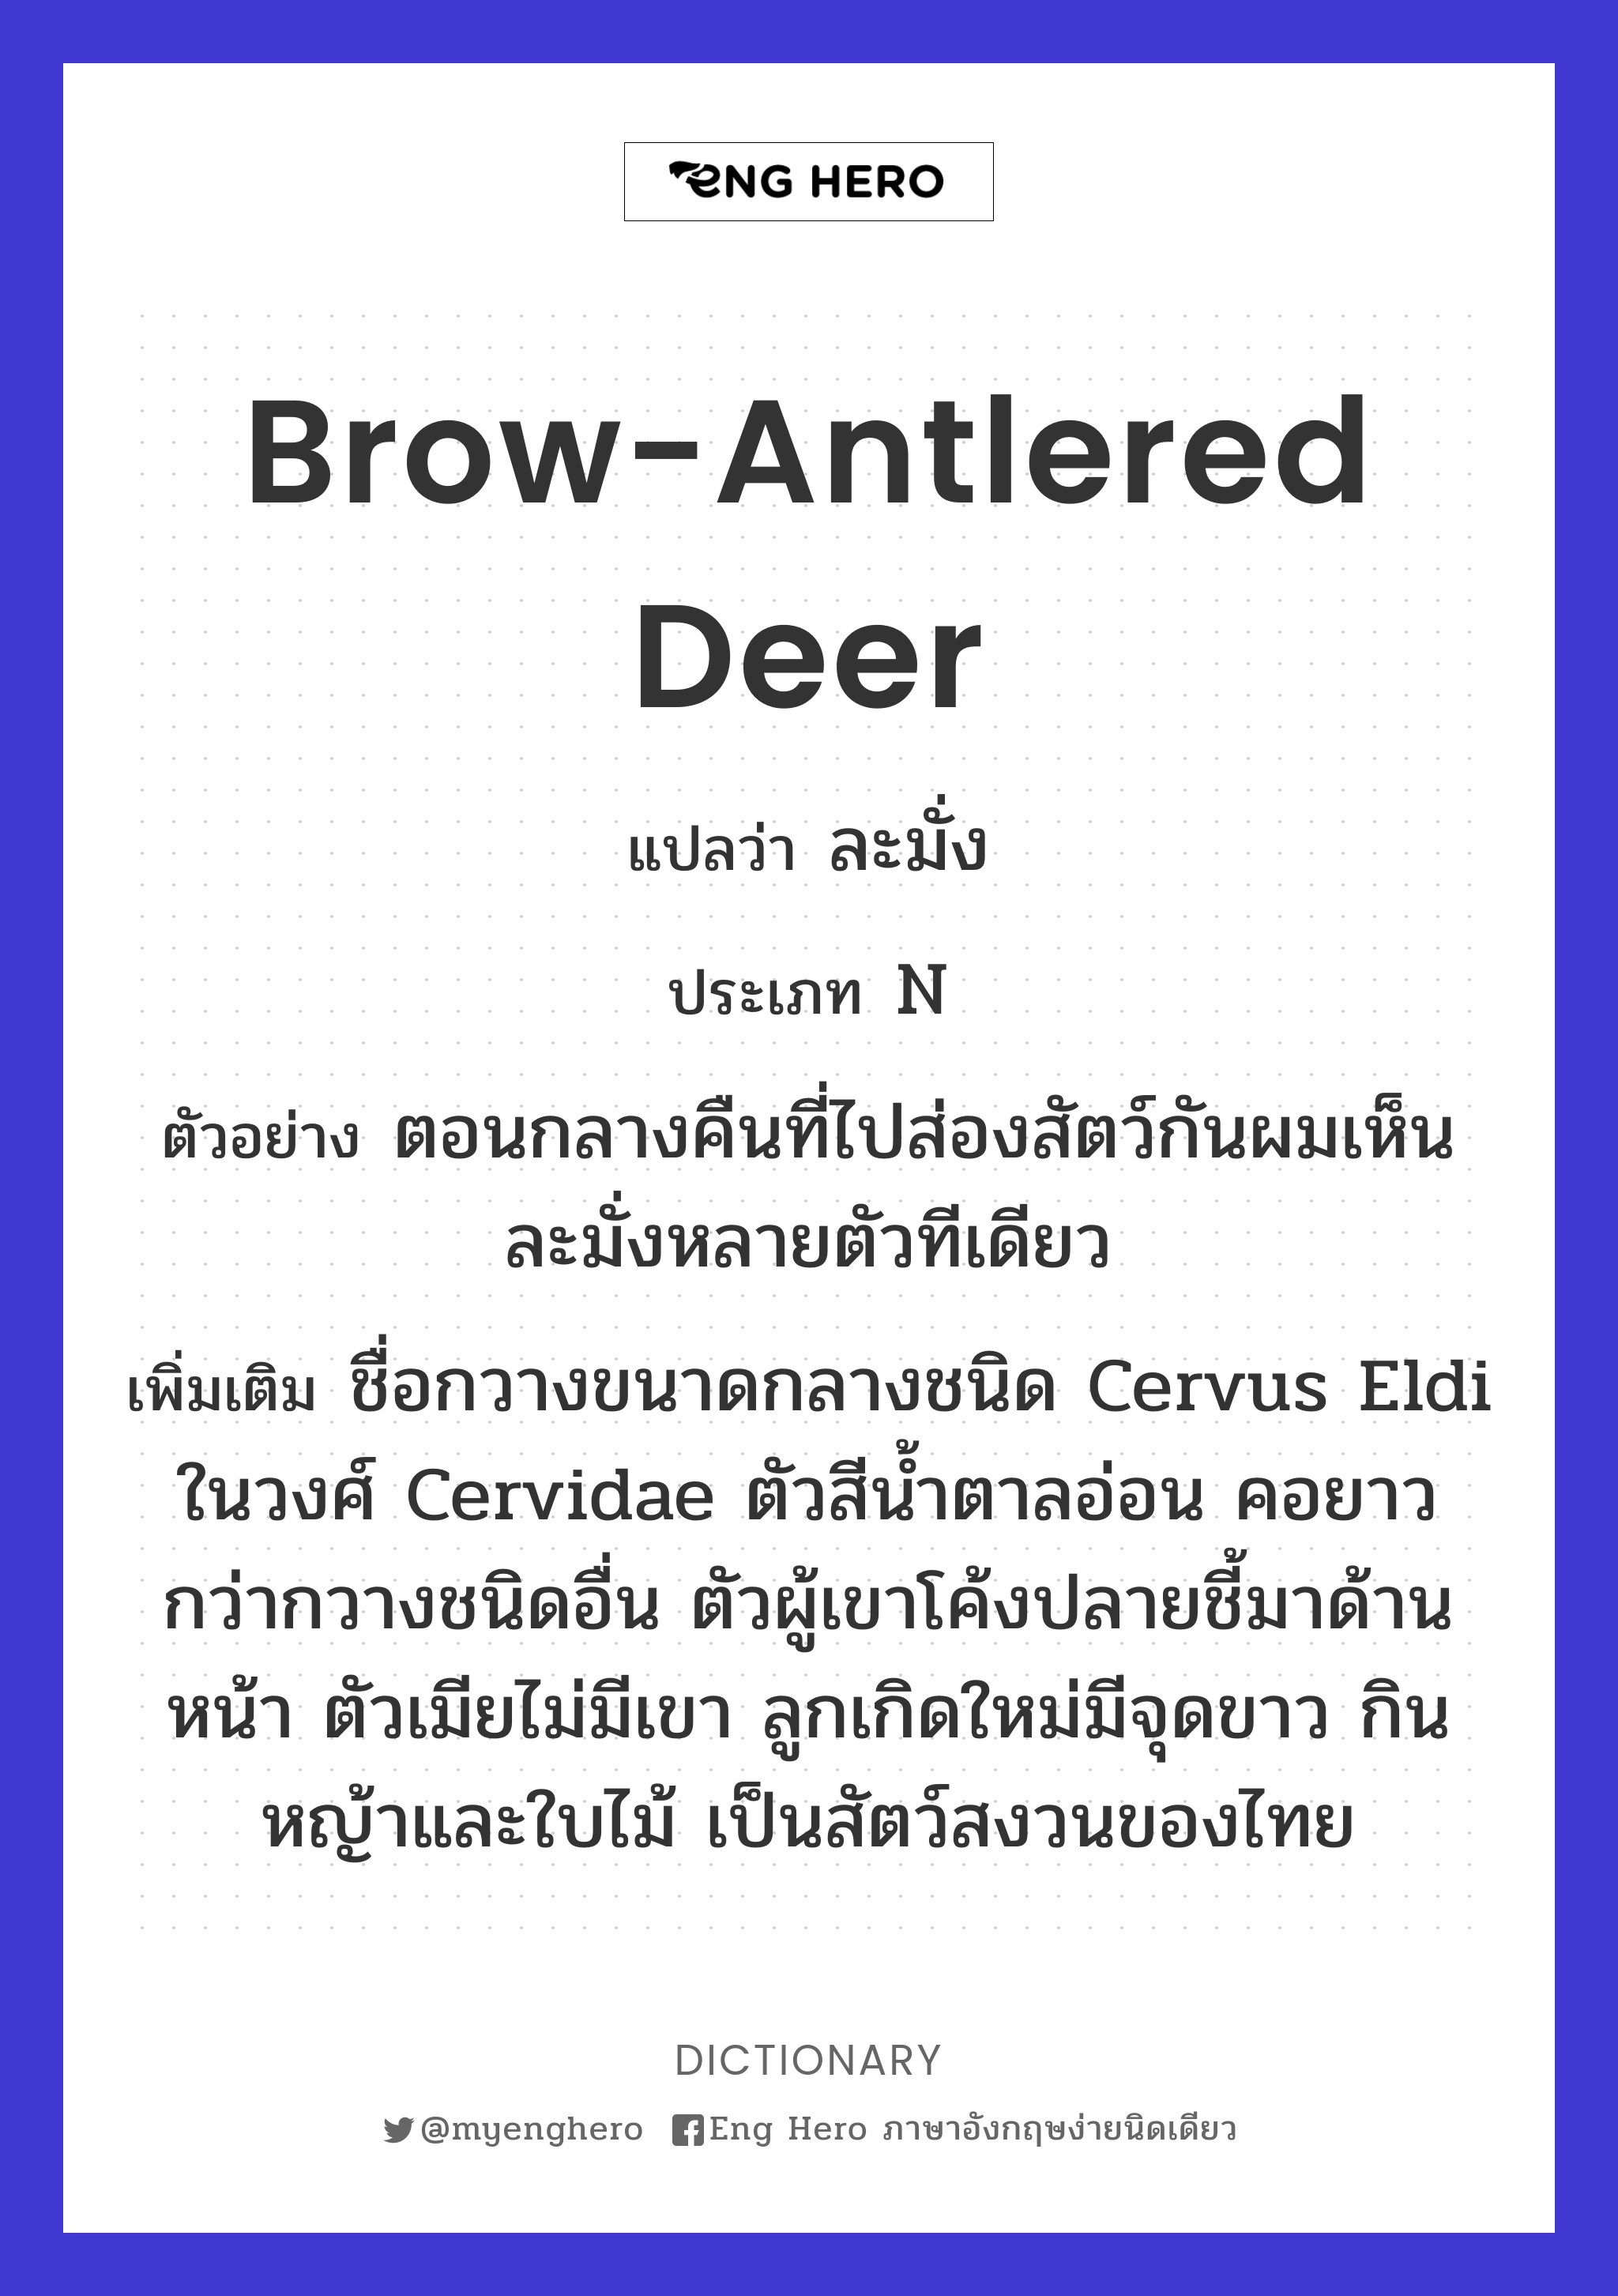 brow-antlered deer